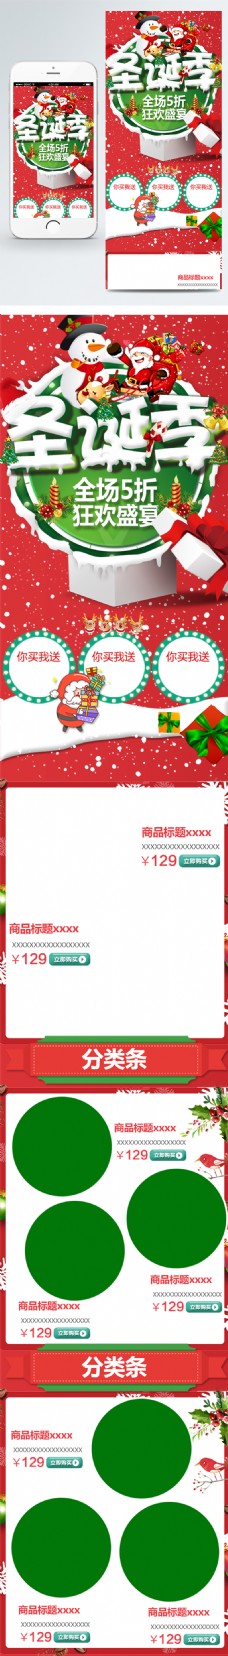 优惠券淘宝天猫圣诞元旦双节聚惠手机端首页模板